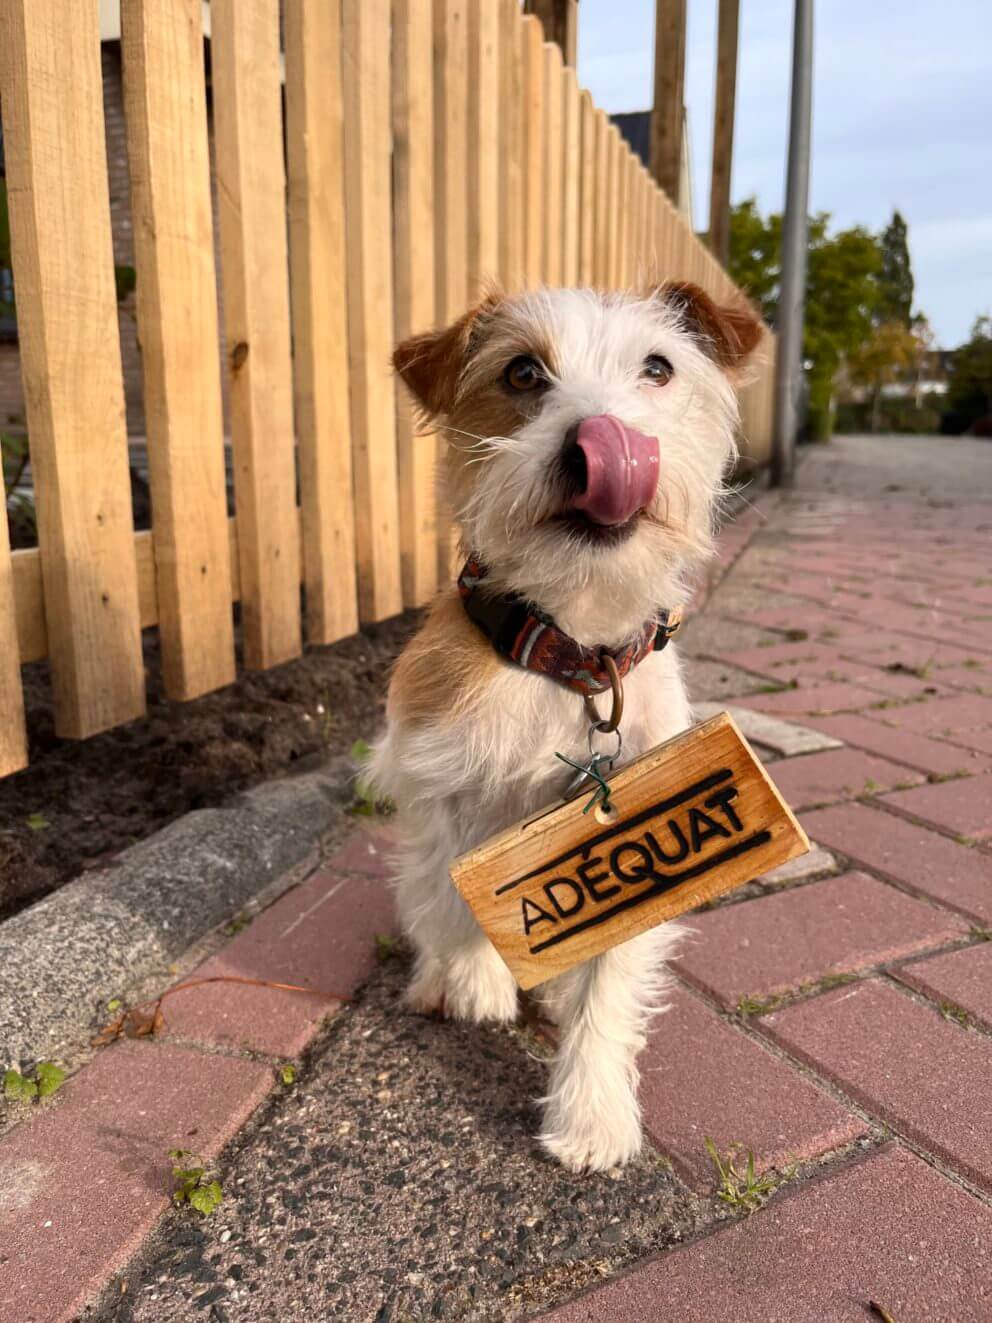 Hond Tomm met Adéquat logo bordje om zijn halsband